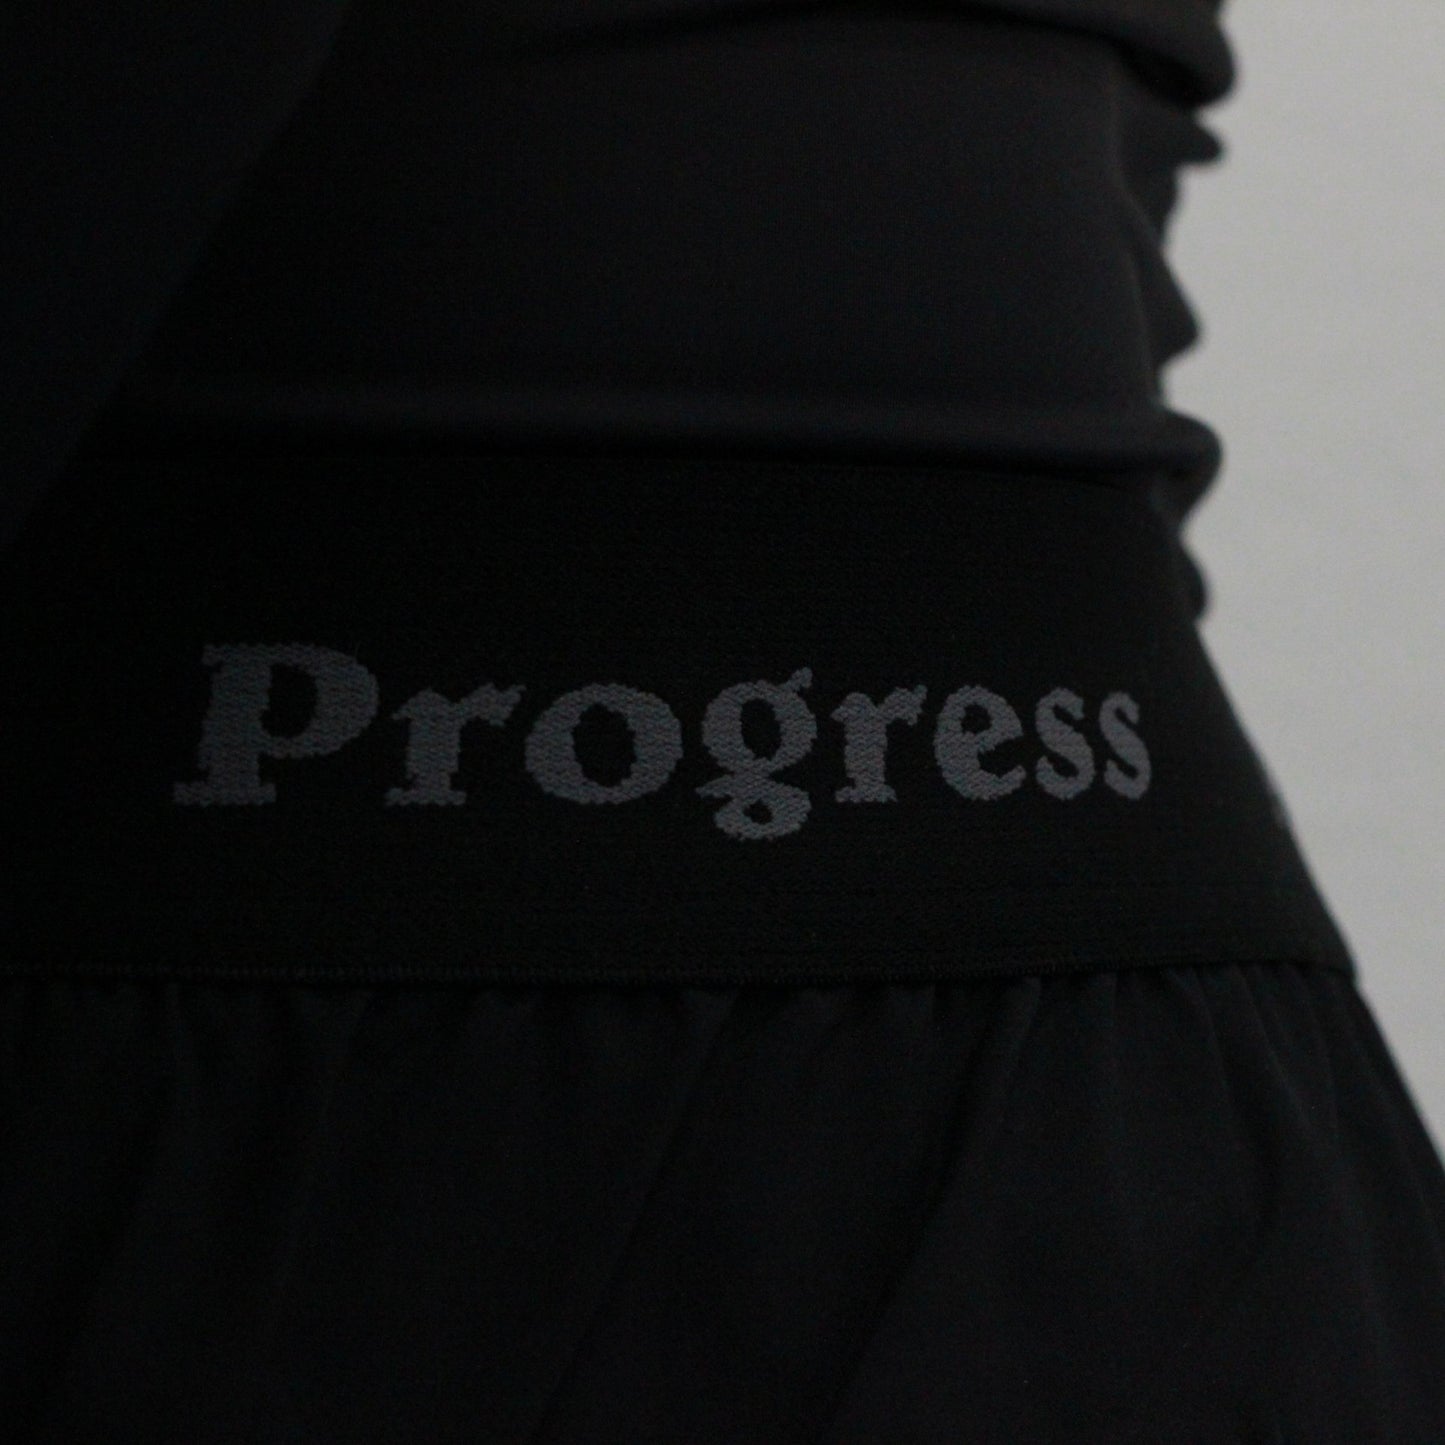 Progress Adult NoGi Shorts